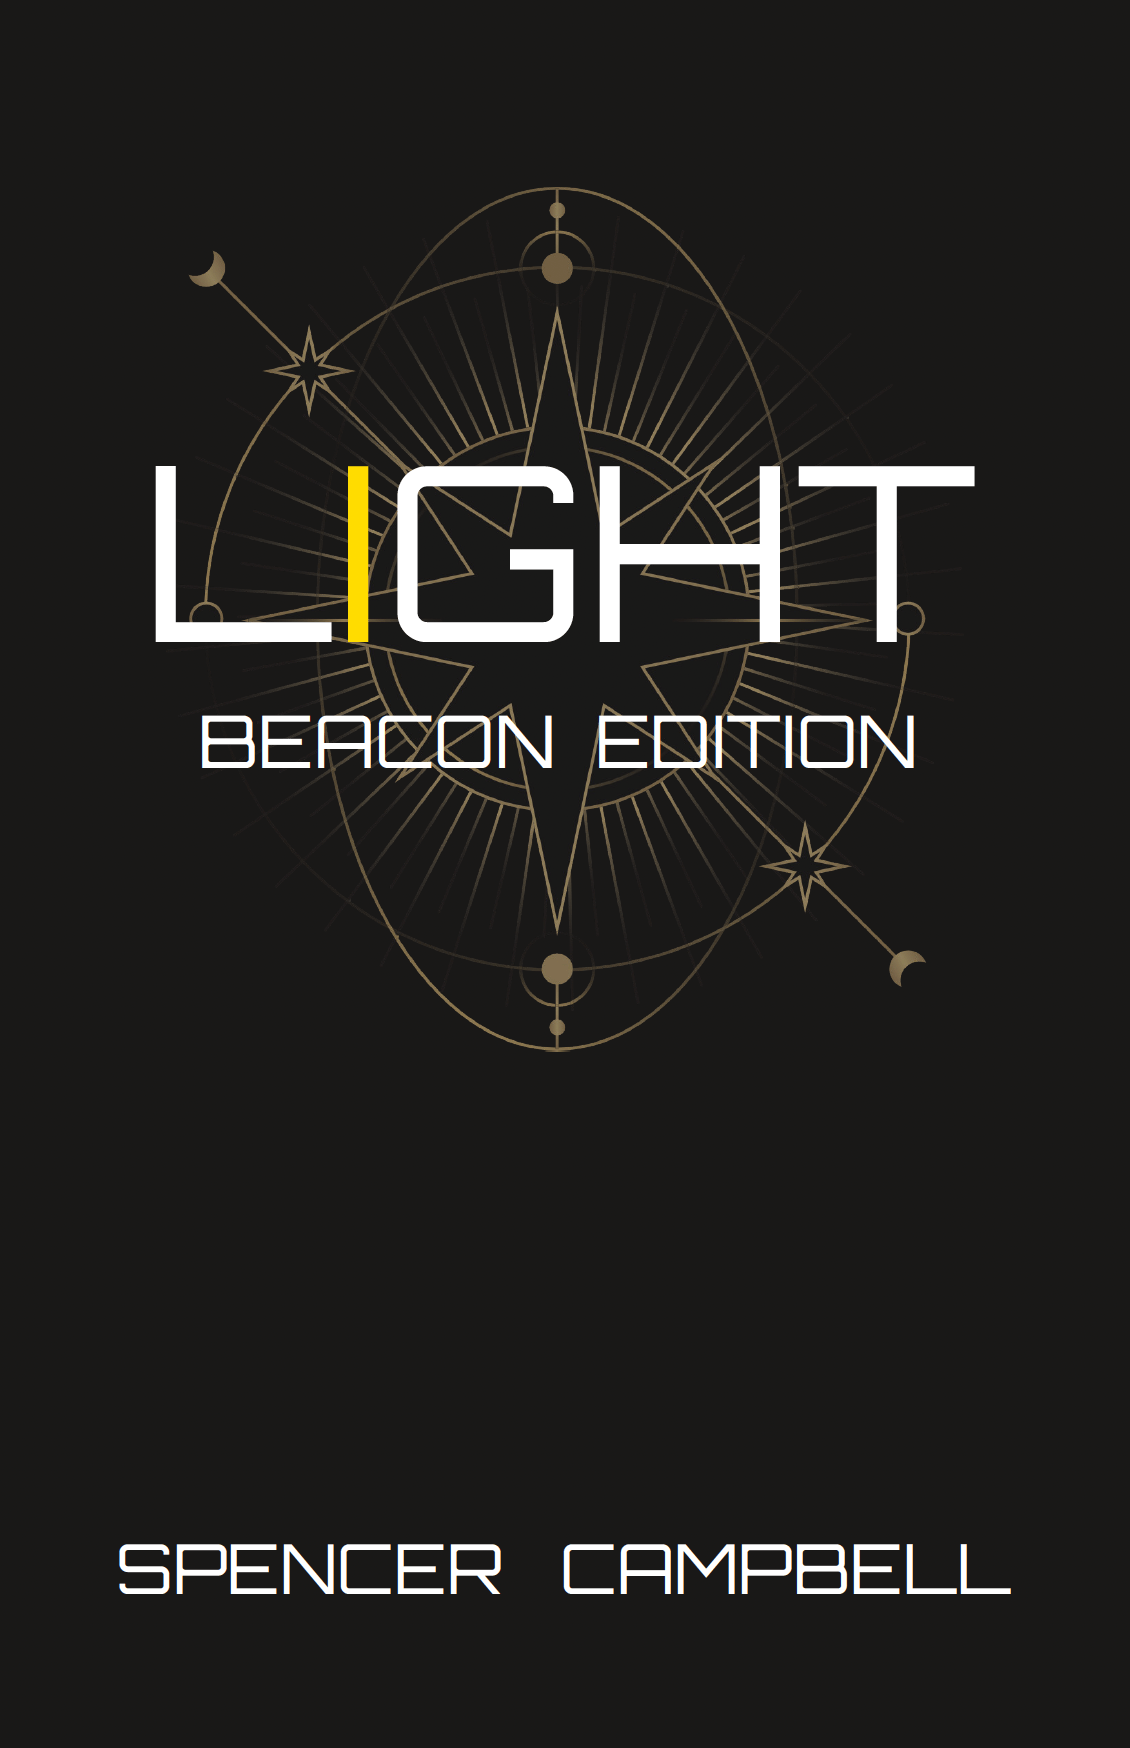 Light - Beacon Edition